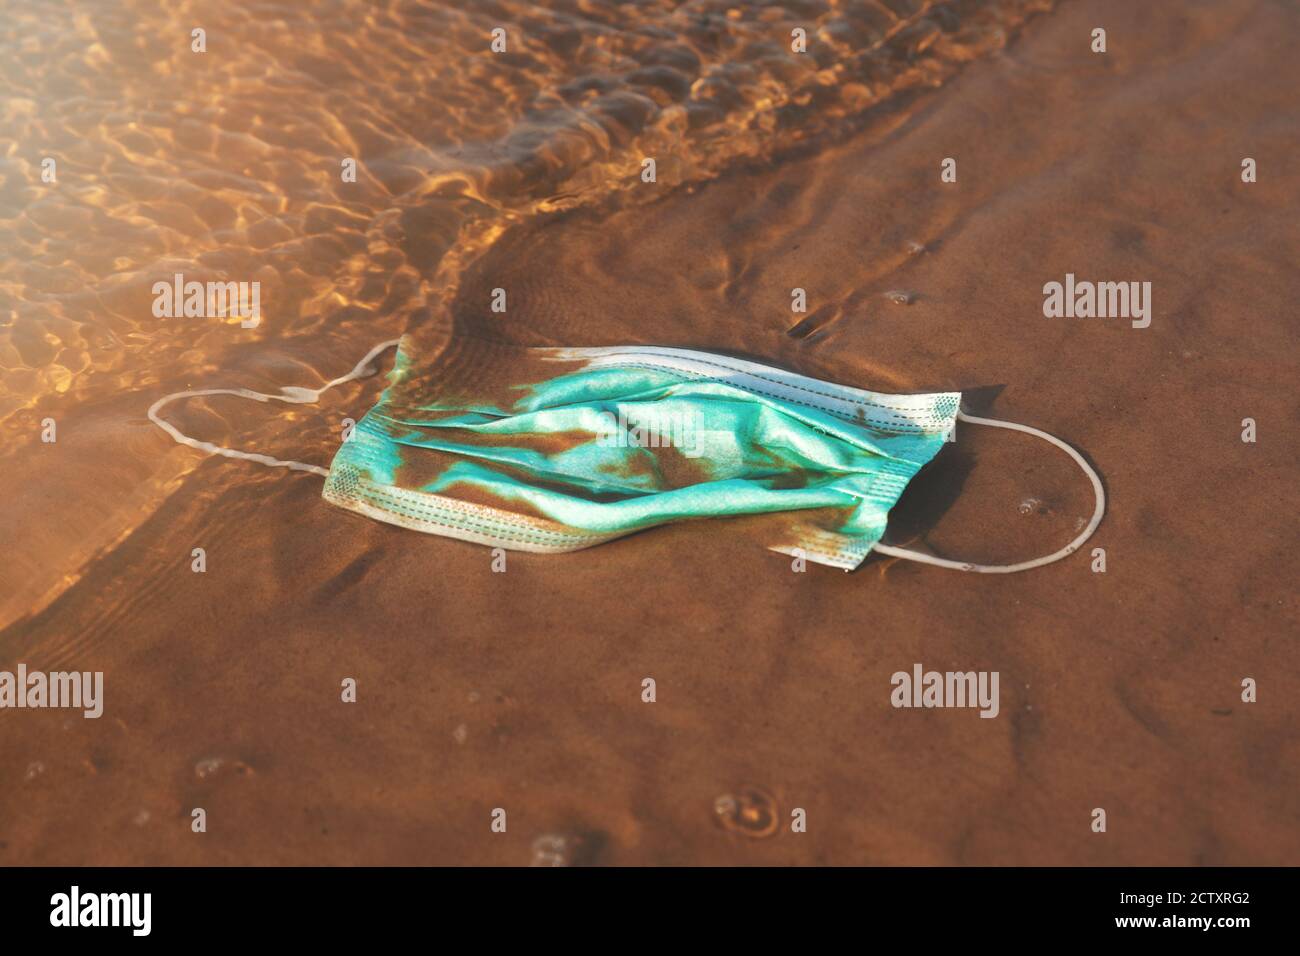 rifiuti infettivi - maschera medica viso in acqua sulla spiaggia di sabbia. mare e inquinamento oceanico dal covid-19 Foto Stock